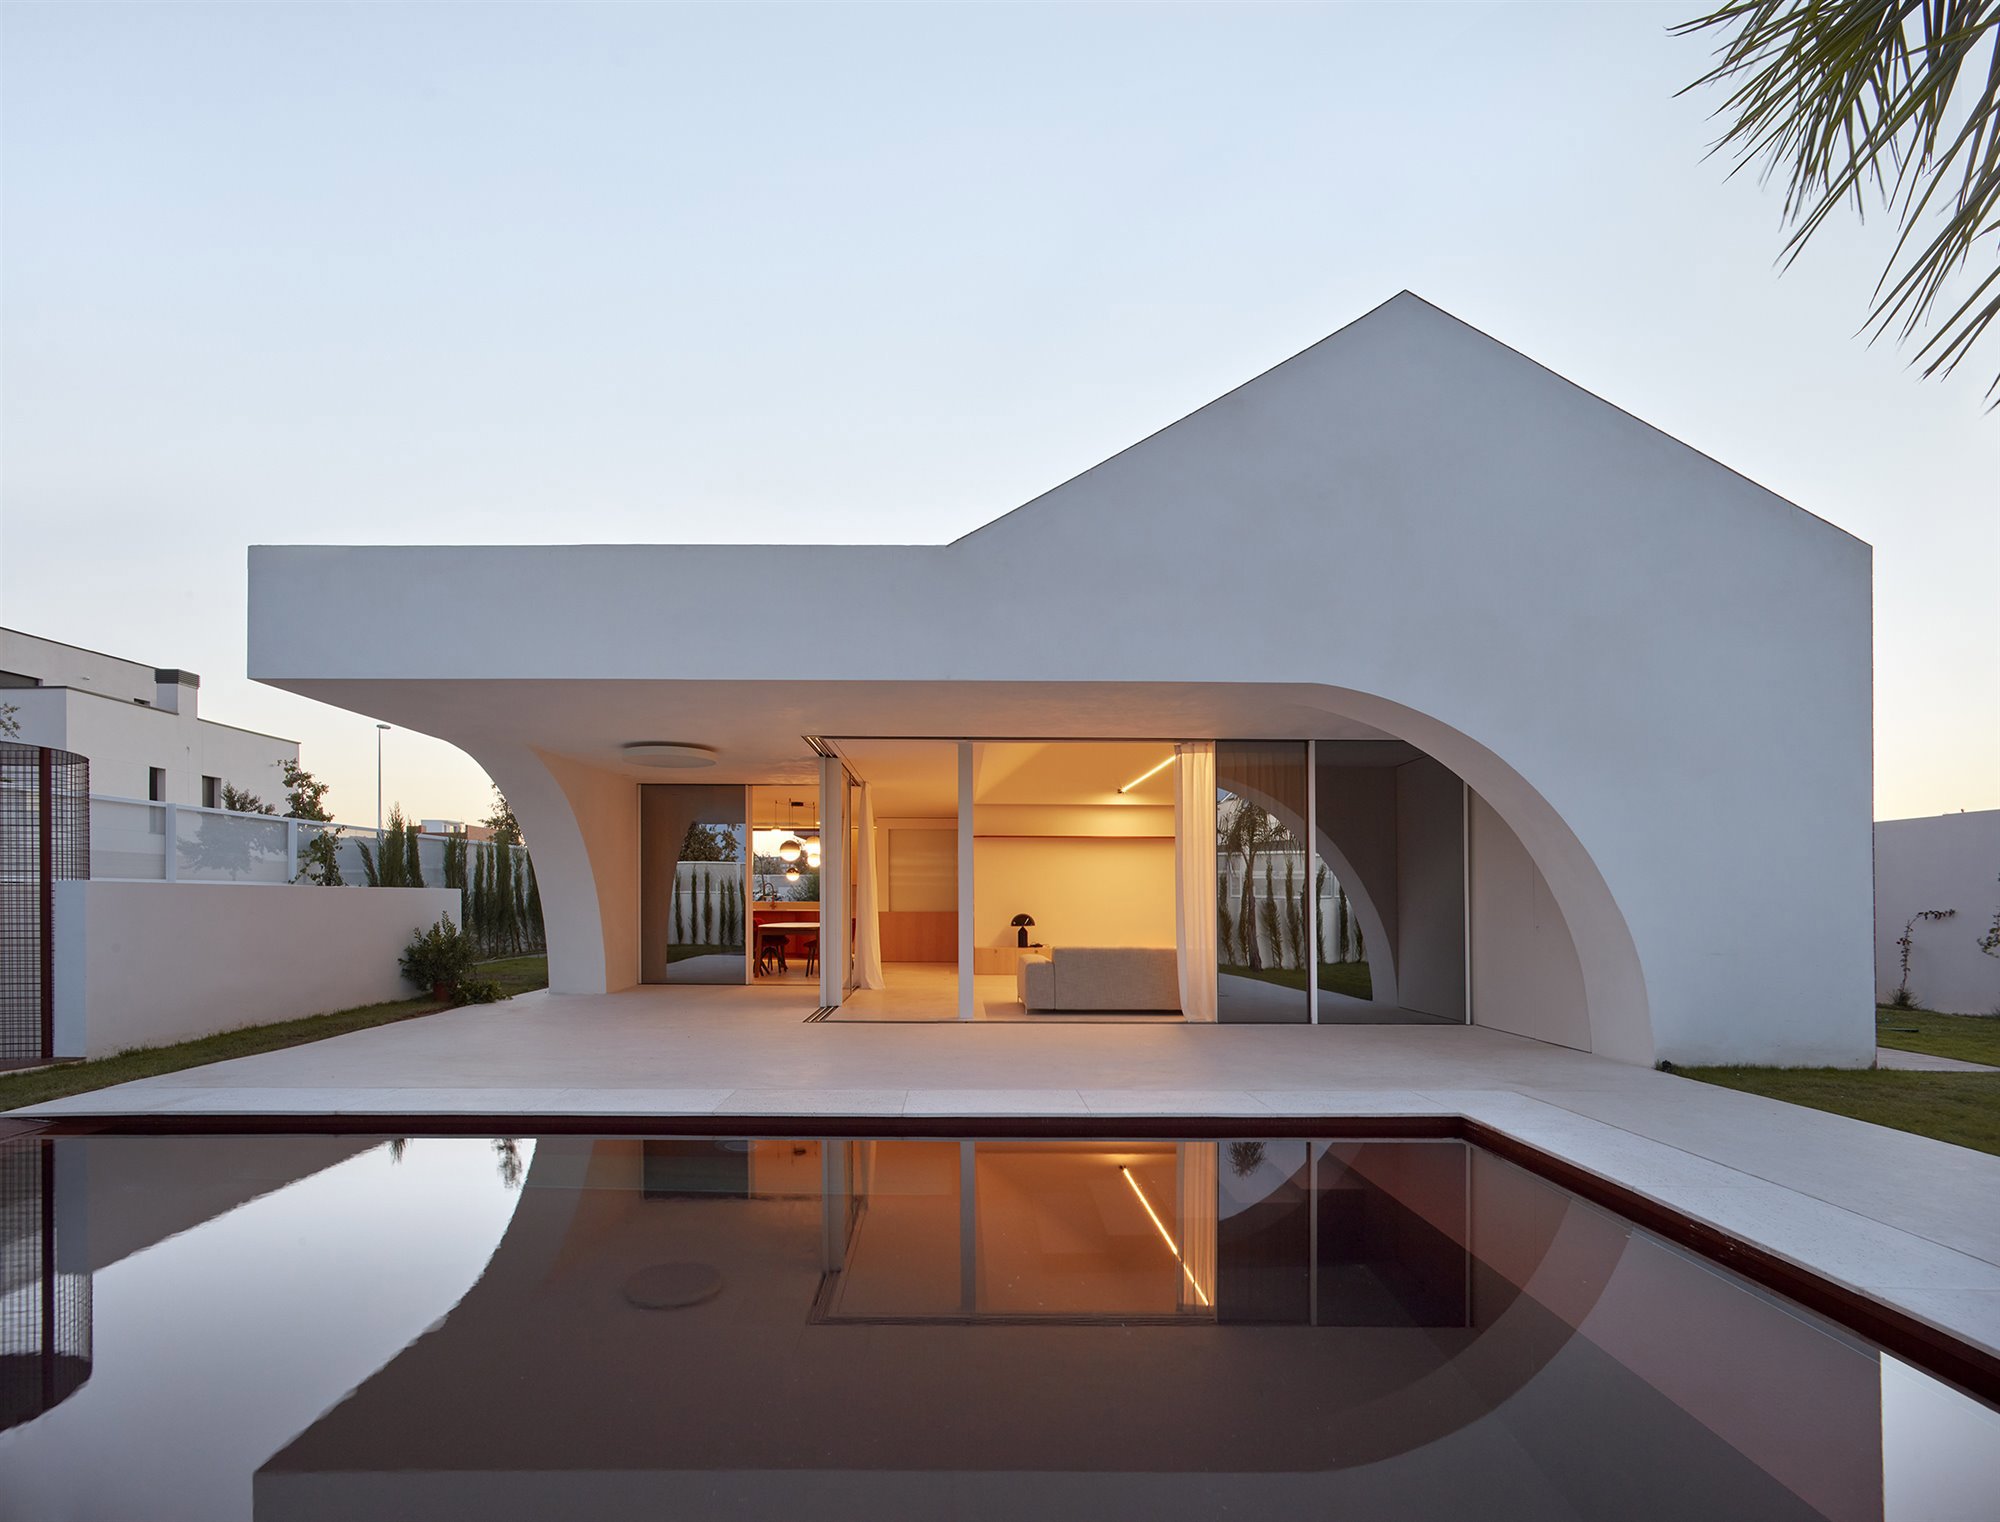 En su exterior, la casa obra del estudio Horma combina formas curvas y rectas. Una imagen llamativa y atractiva.